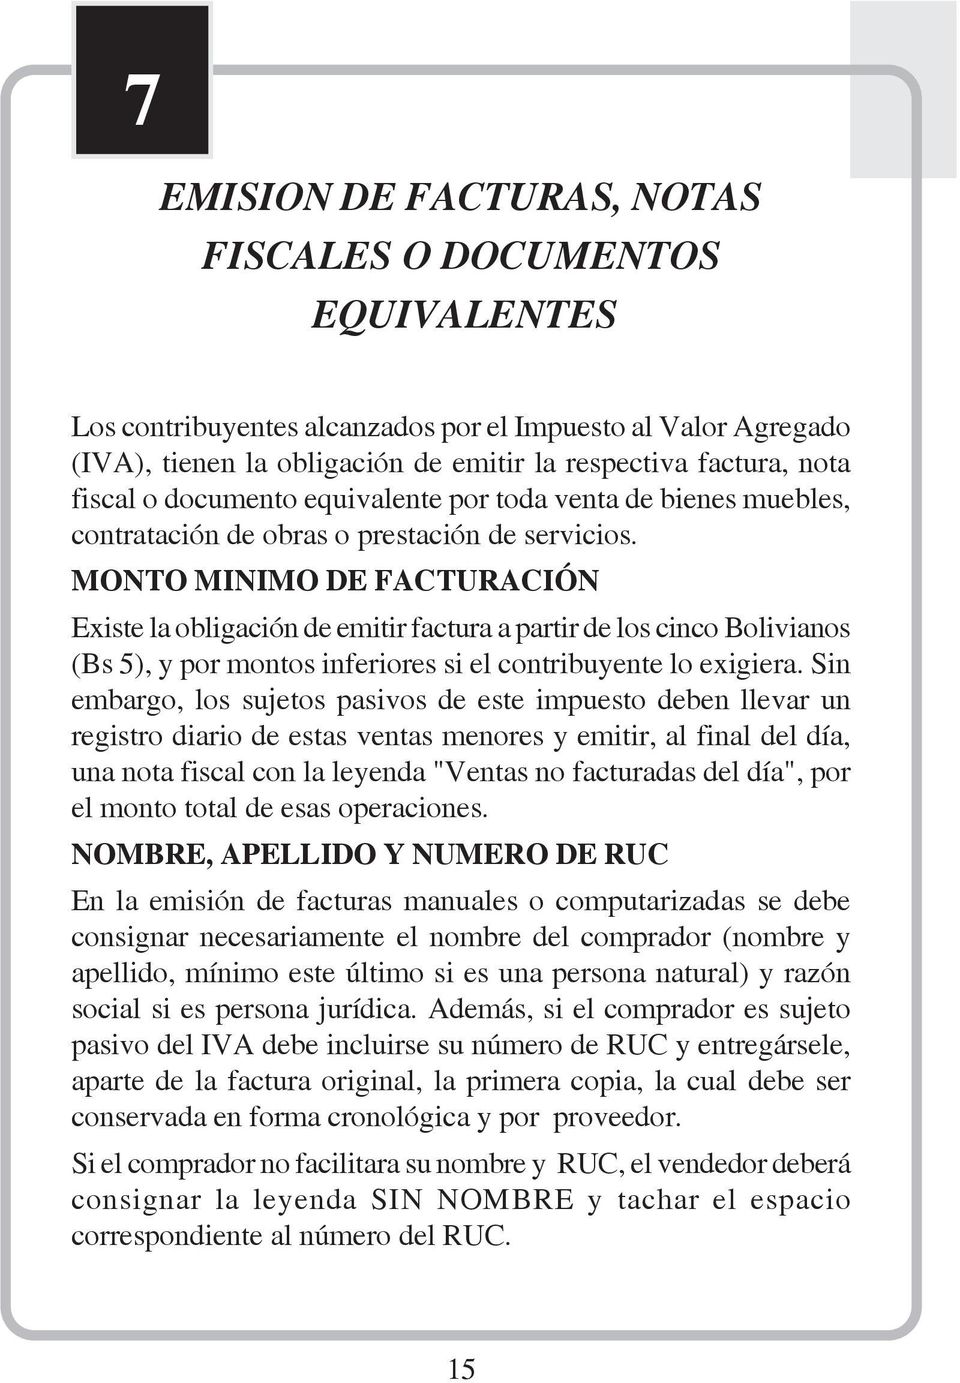 MONTO MINIMO DE FACTURACIÓN Existe la obligación de emitir factura a partir de los cinco Bolivianos (Bs 5), y por montos inferiores si el contribuyente lo exigiera.